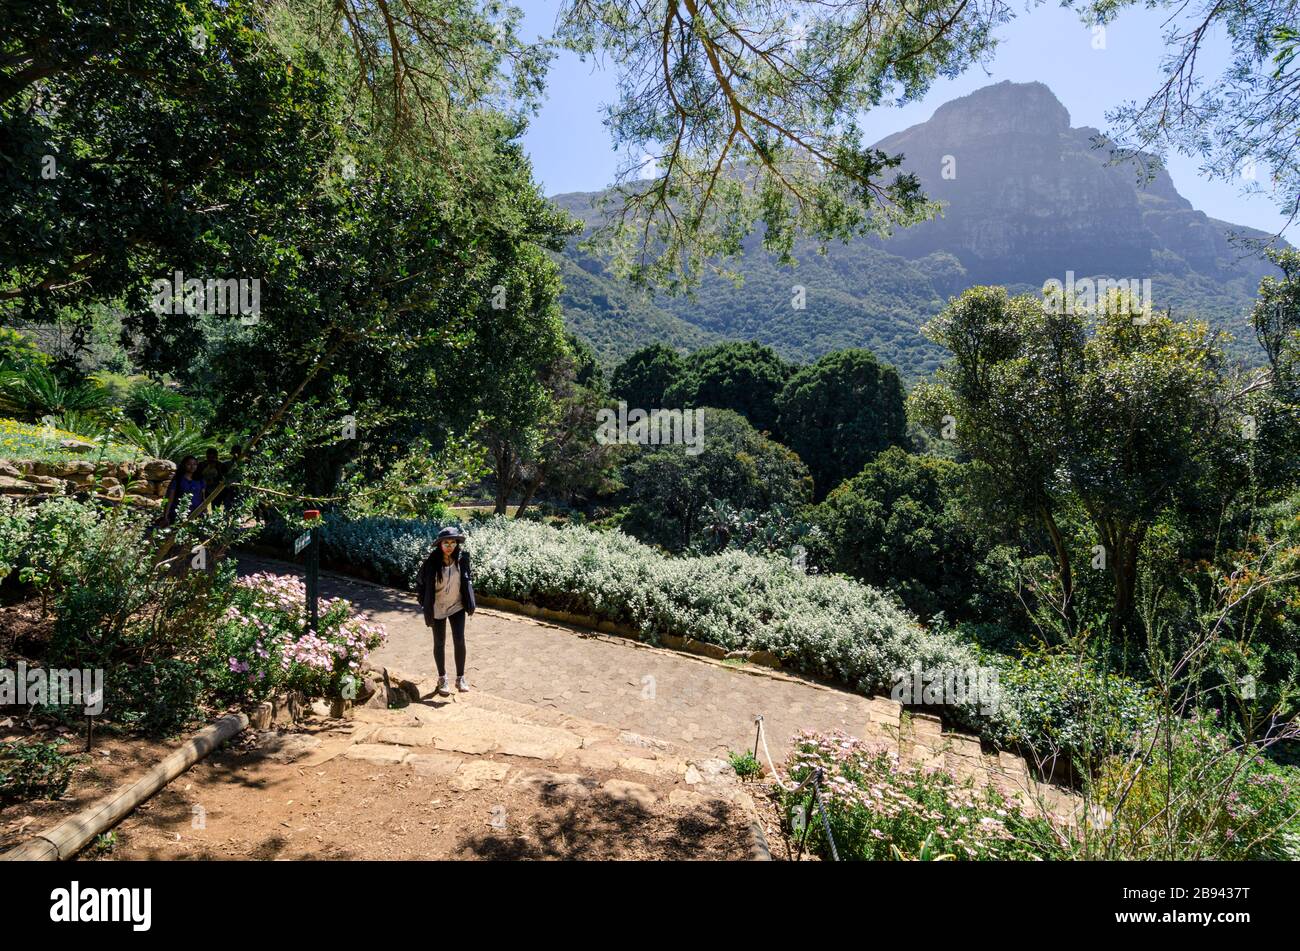 Touristique asiatique profitant des jardins botaniques de Kirstenbosch avec vue sur le pic de devils, le Cap Afrique du Sud Banque D'Images